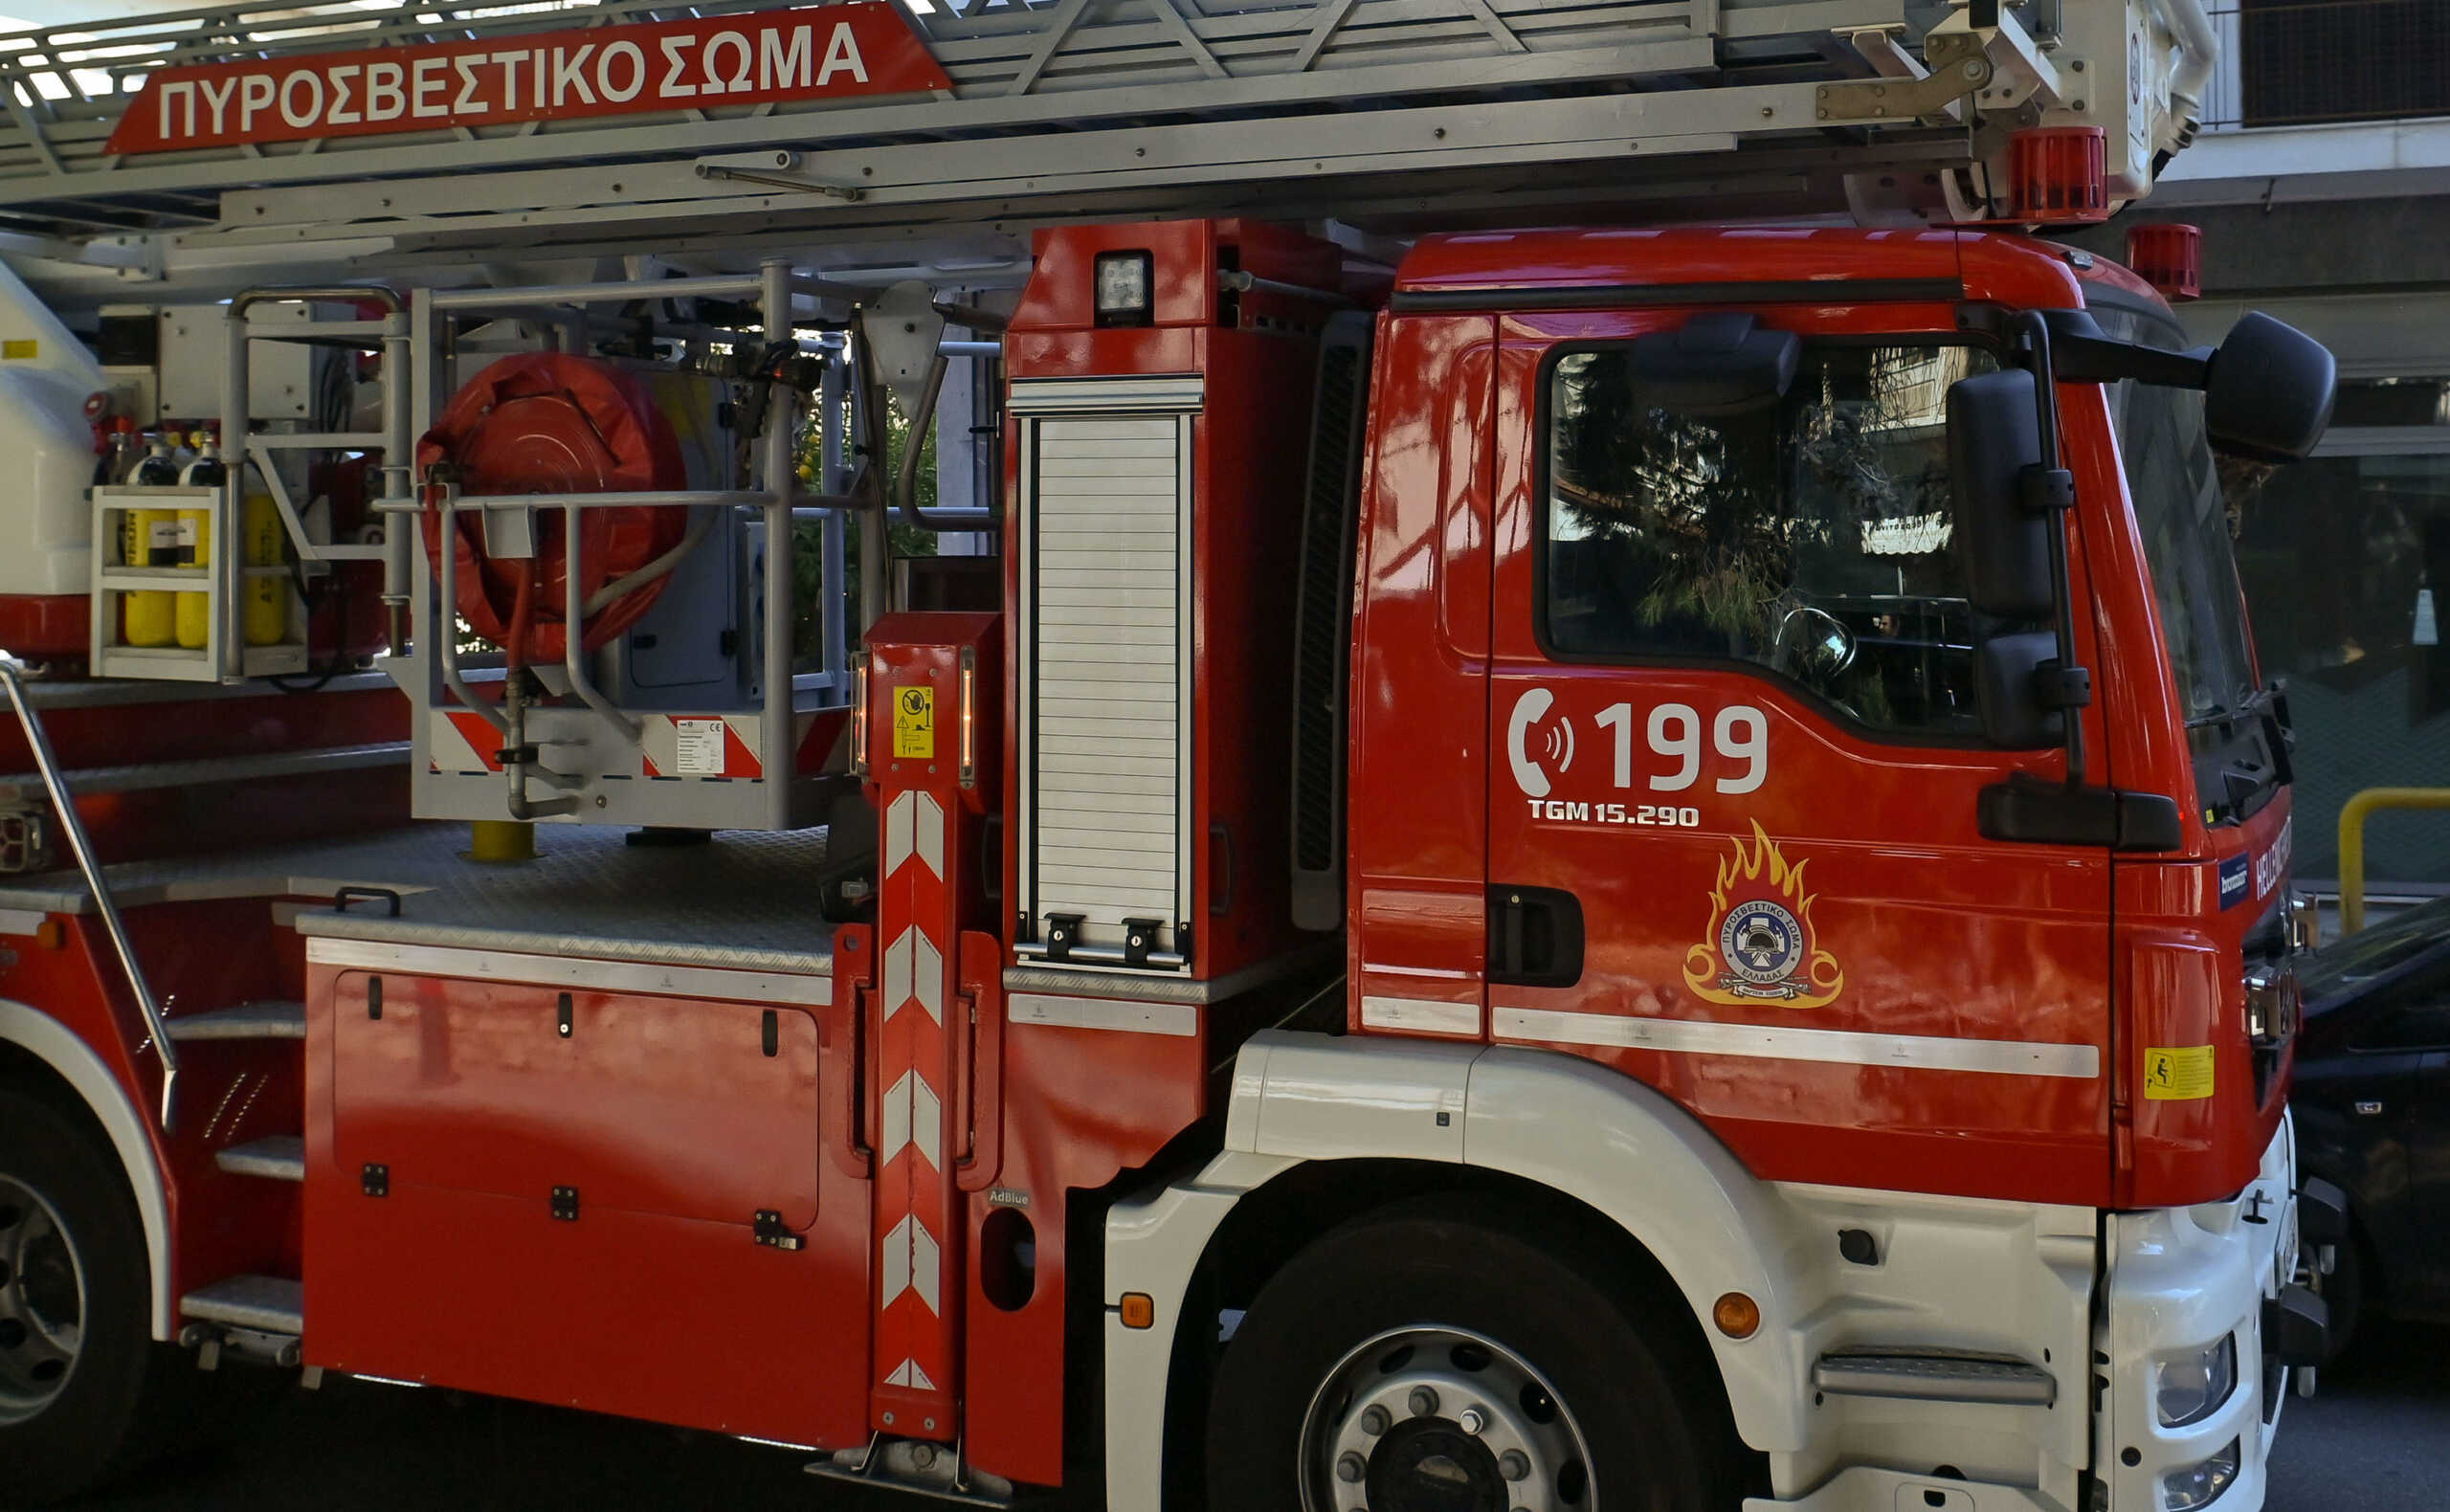 Θεσσαλονίκη: Φωτιά σε δύο αυτοκίνητα και μια μηχανή σε πυλωτή πολυκατοικίας